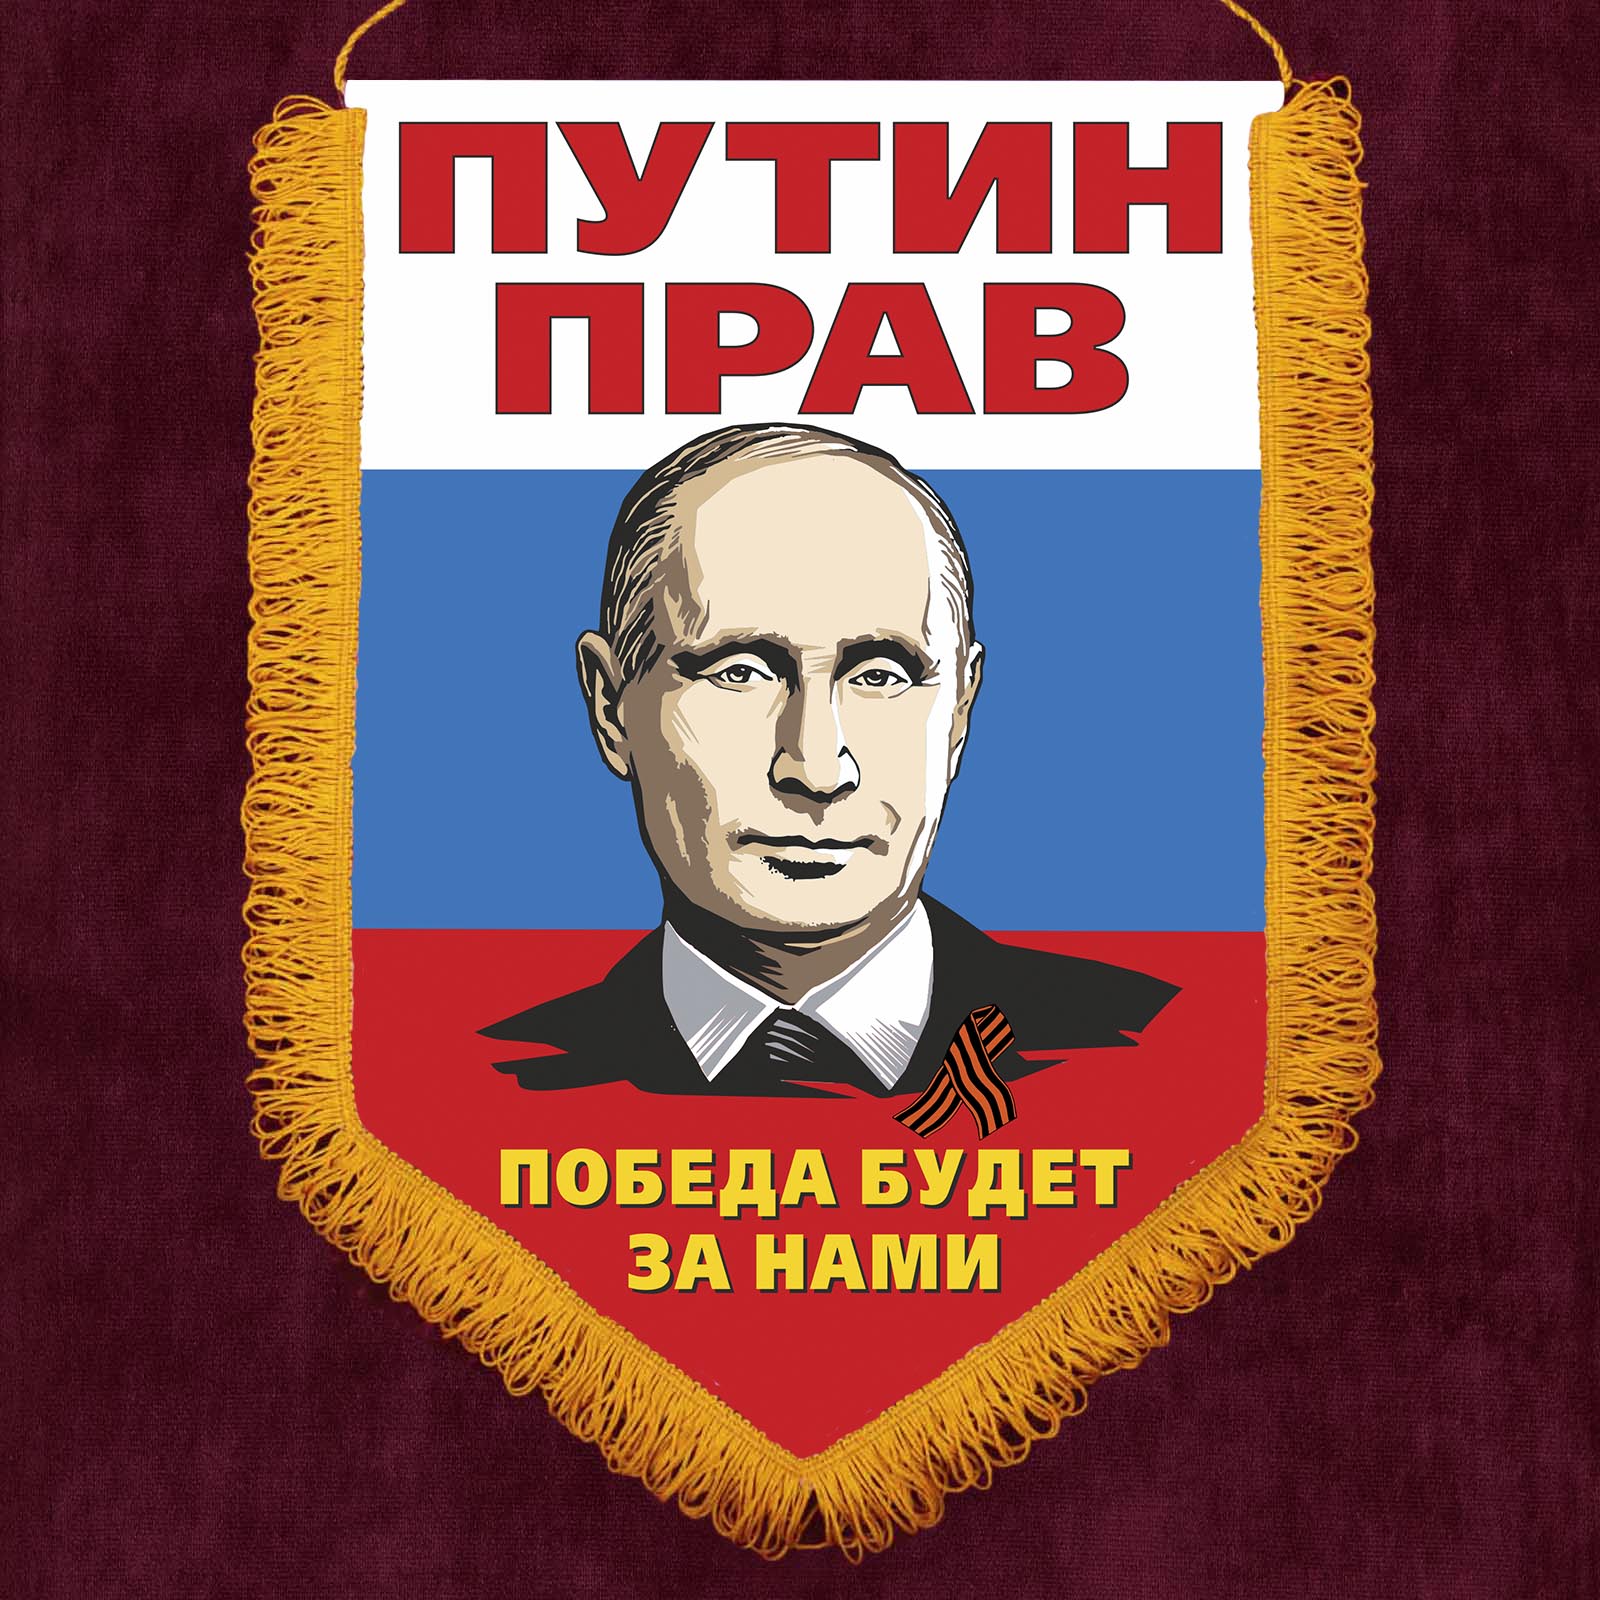 Вымпел "Путин прав"